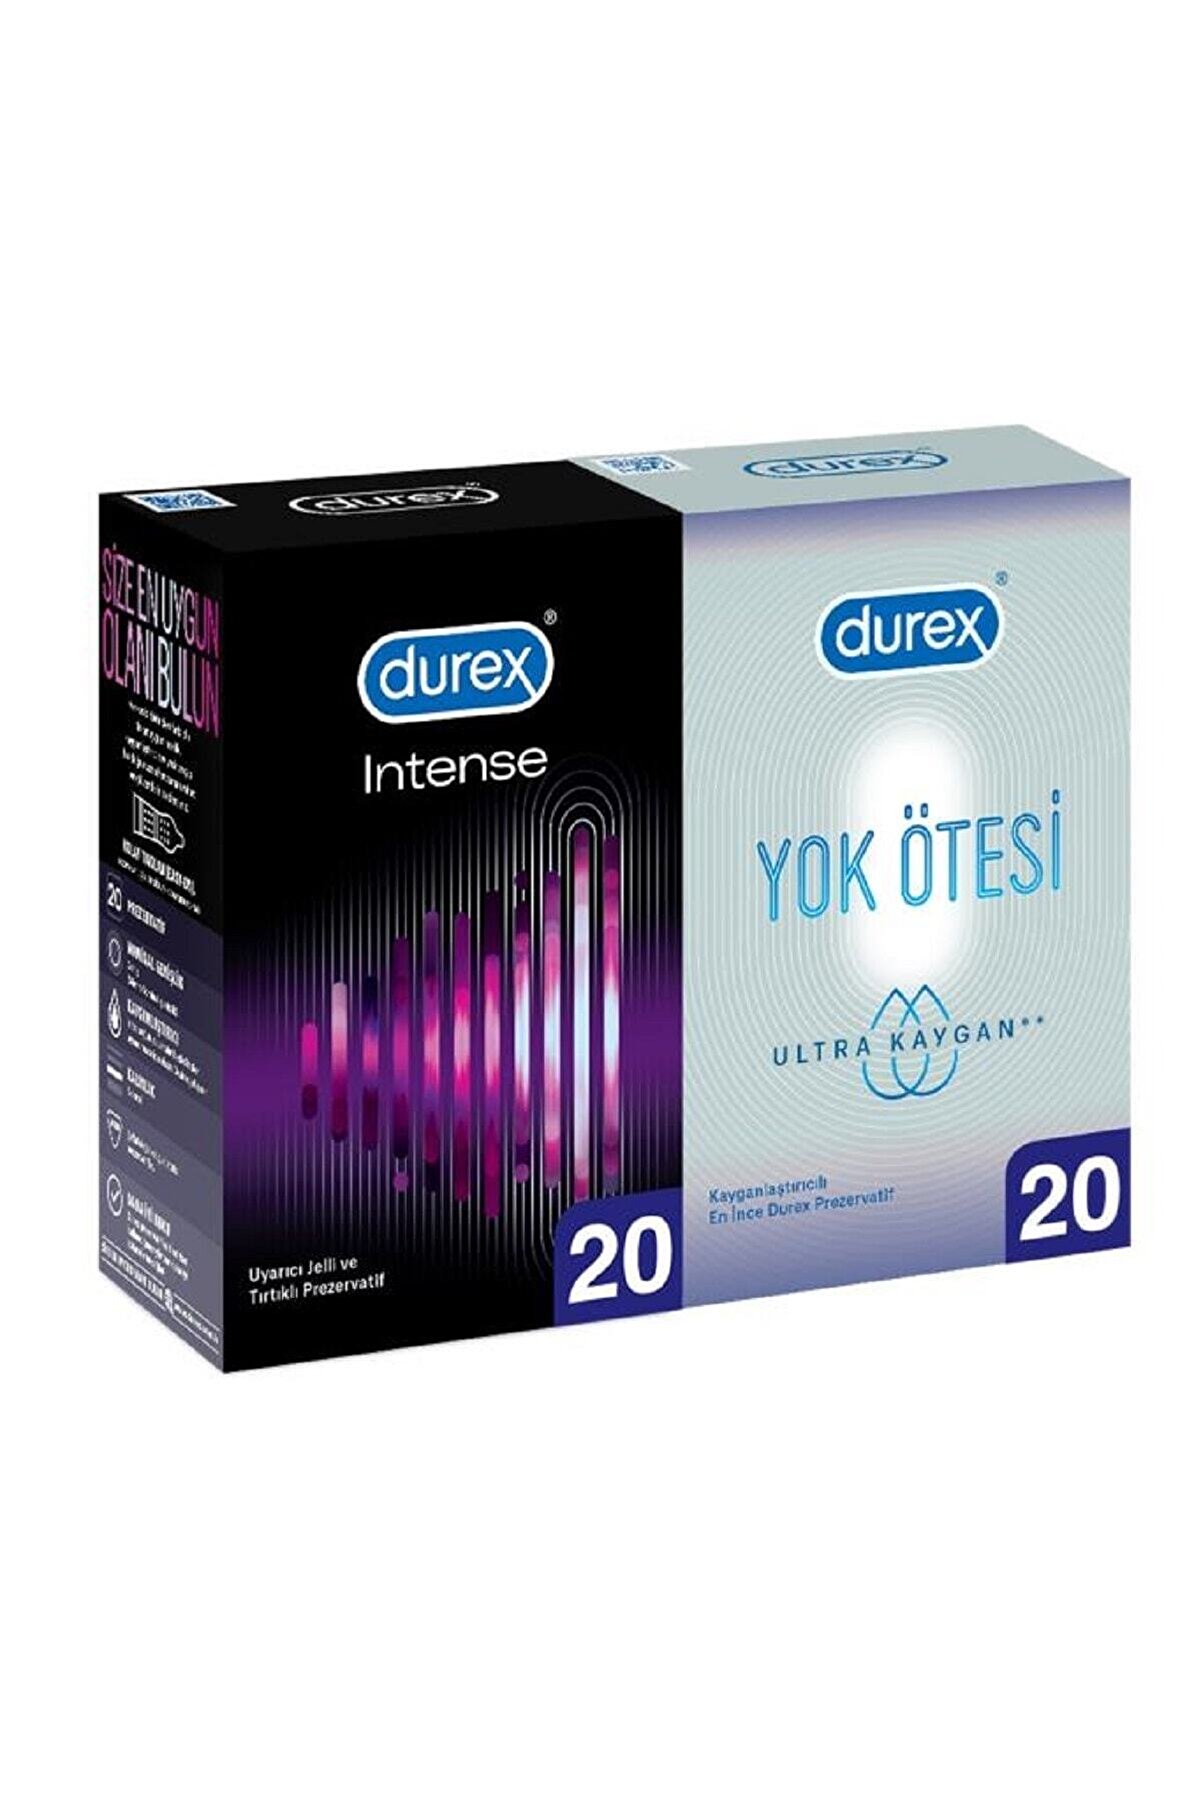 Durex Intense 20’li + Durex Yok Ötesi Ultra Kaygan 20’li Prezervatif Avantaj Paketi